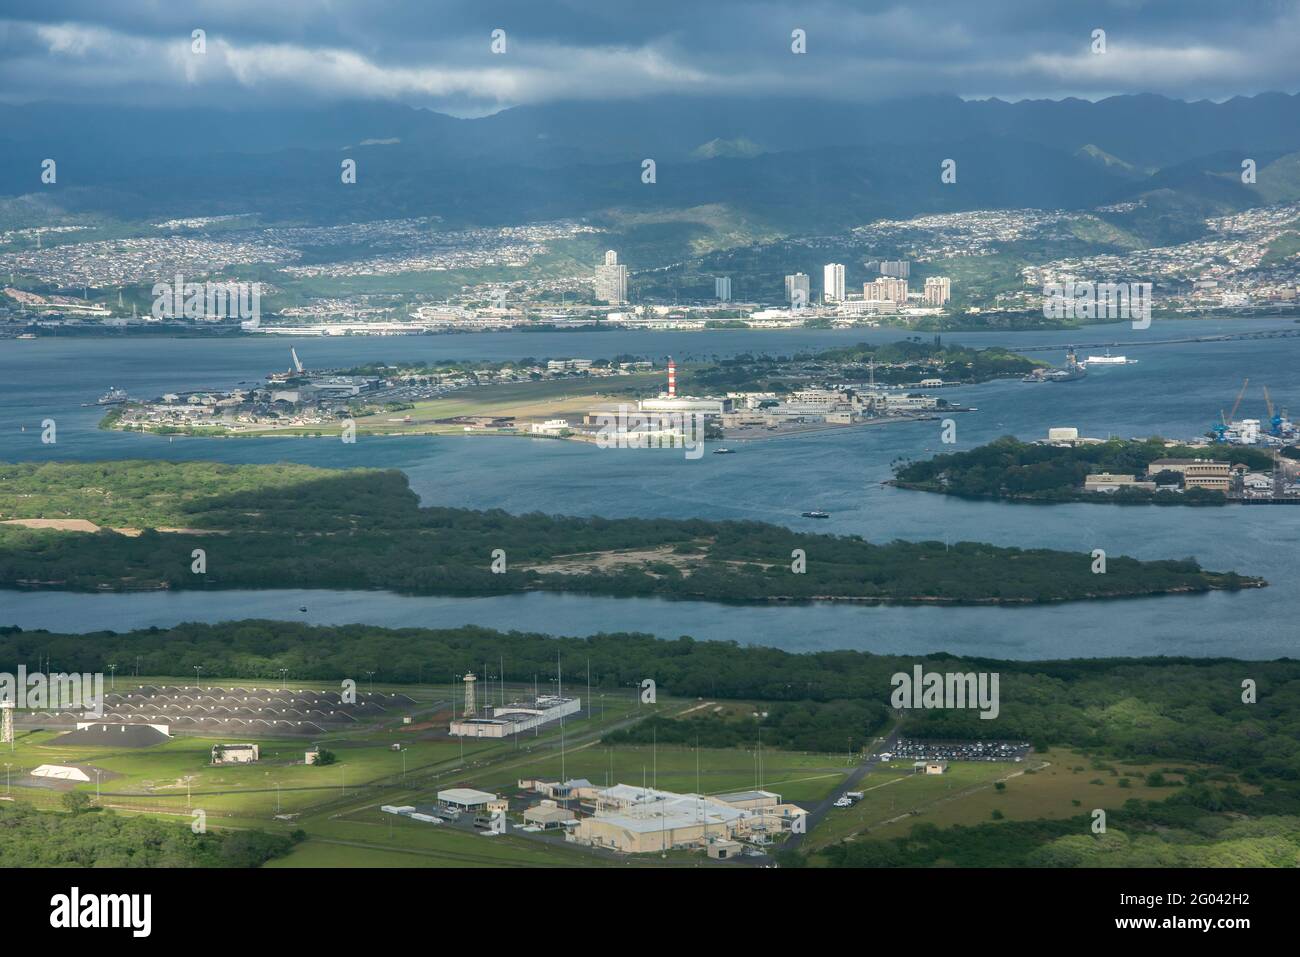 Luftaufnahme von Honolulu Hawaii mit Ford Island in der Mitte und Ewa Beach im Vordergrund. Stockfoto